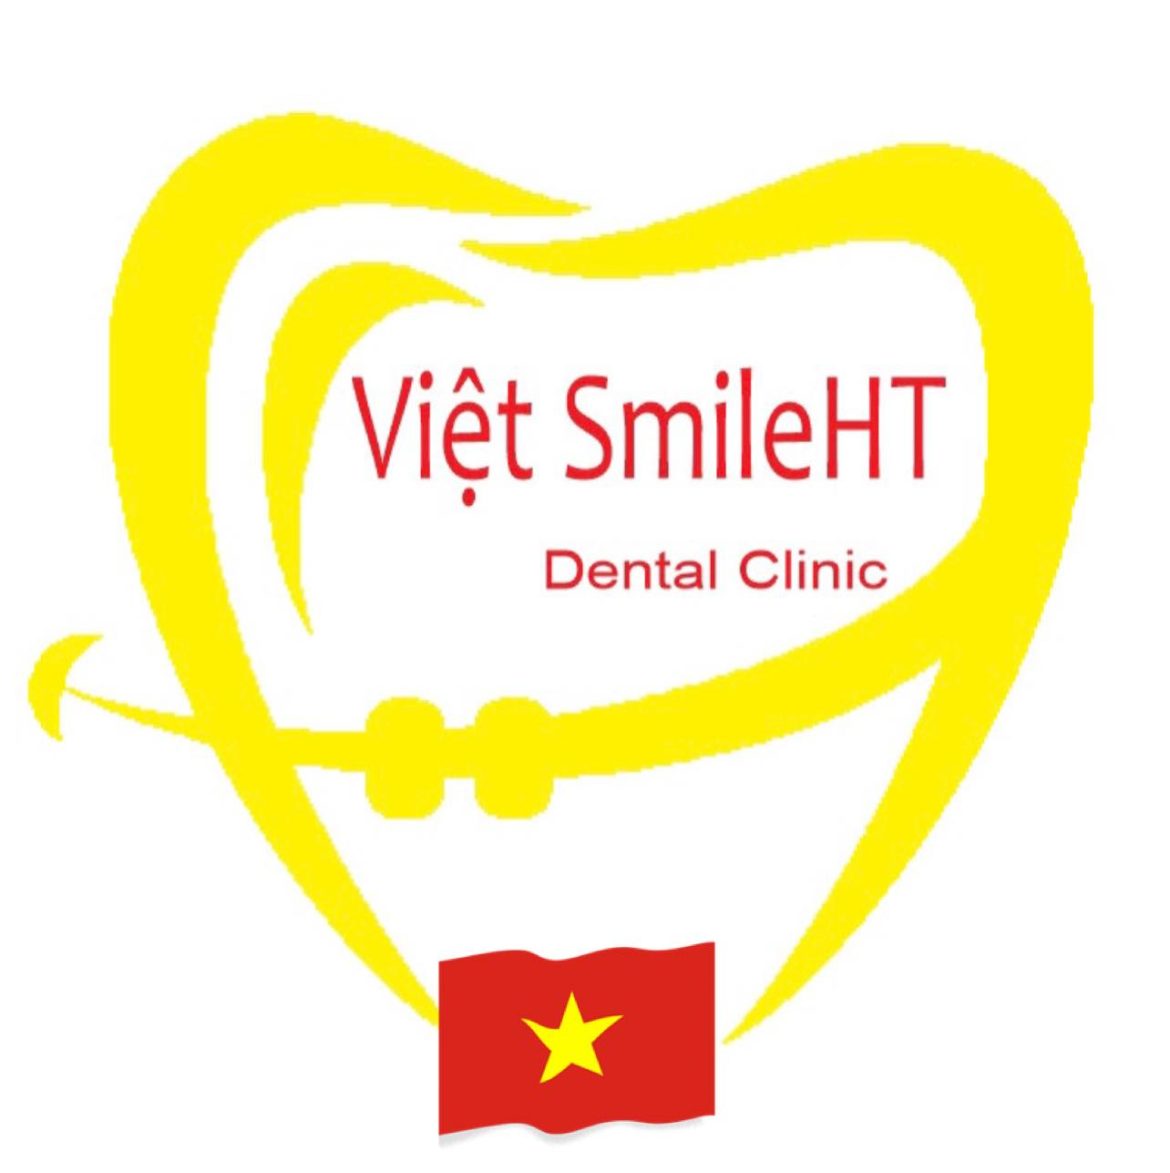 Nha khoa Việt SmileHT Chuyên Cung Cấp Dịch Vụ Làm Răng Sứ Thẩm Mỹ – Chỉnh Nha Chuyên Nghiệp Uy Tín Chất Lượng